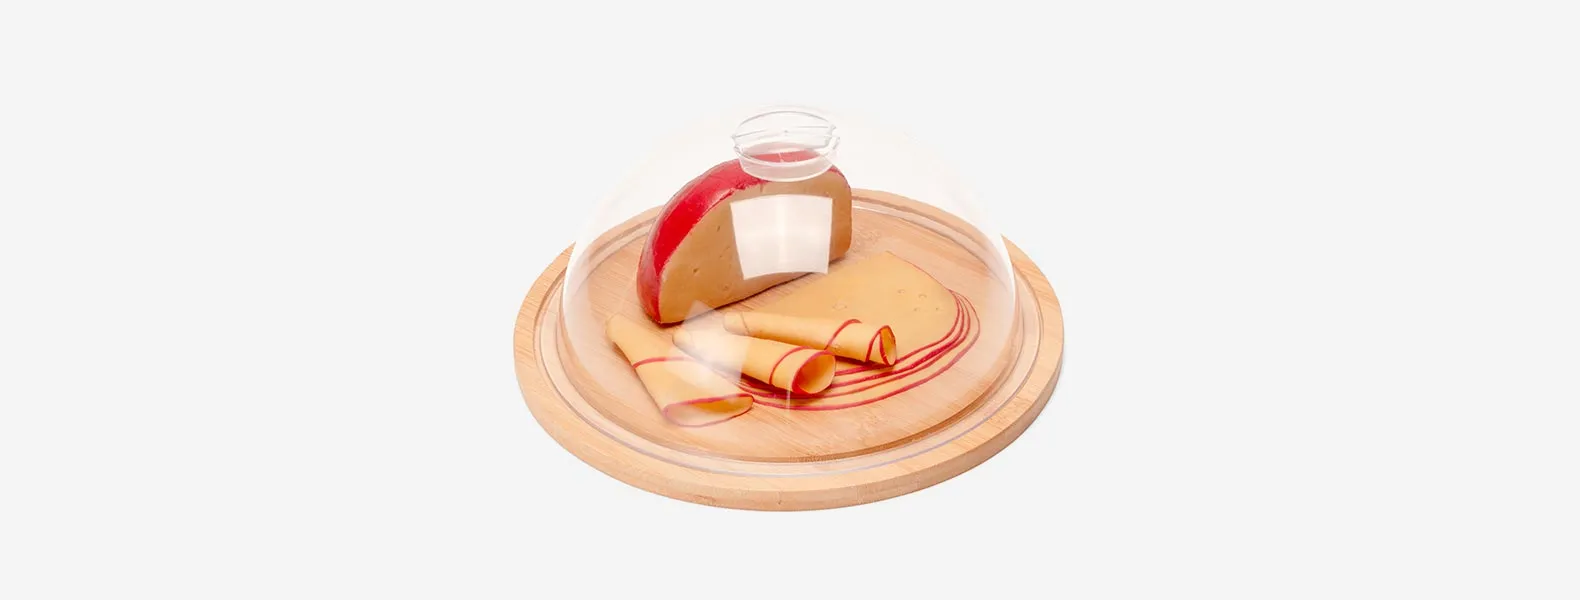 Porta queijo em Bambu/Policarbonato. Conta com base em bambu Ø22cm e tampa em Policarbonato.